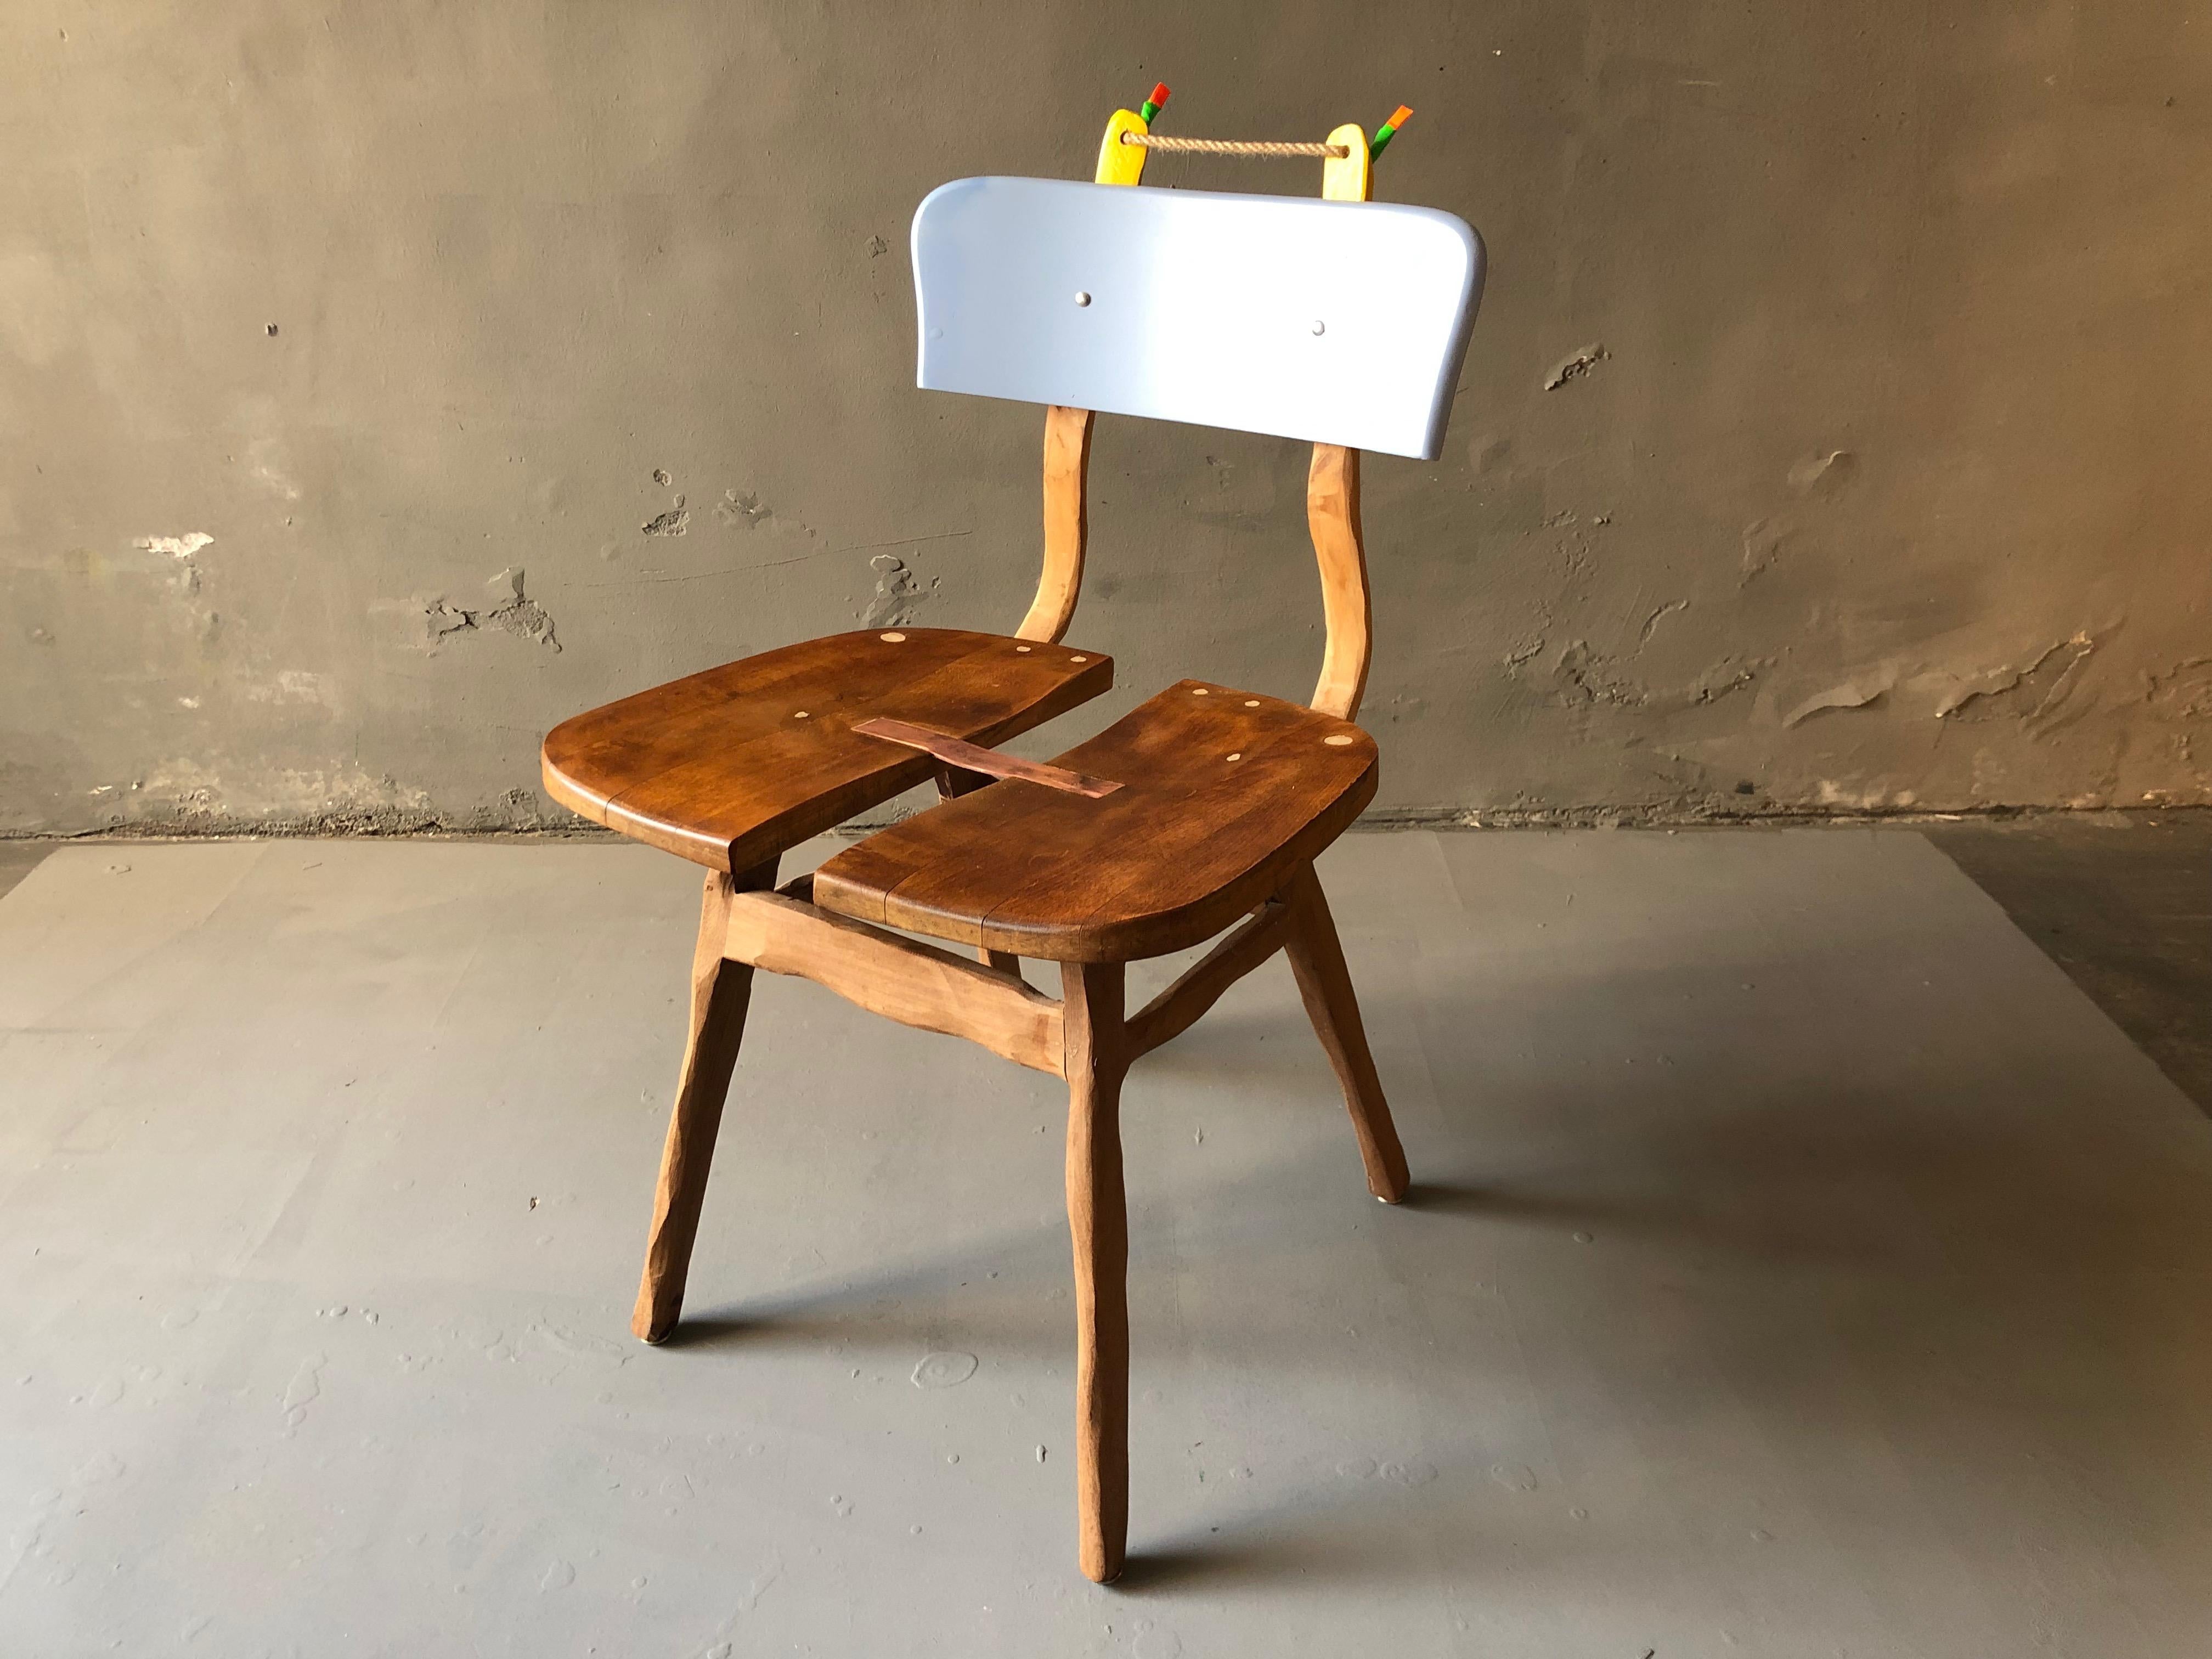 Stuhl, bestehend aus 3 Stühlen, mit Messingstreifen, bemalt und lackiert. Ein perfektes Beispiel für die funktionale Kunst von Staab.
Durch meine Arbeit verwandle ich jeden Stuhl in ein einzigartiges und individuelles Objekt. Stühle, die einst in